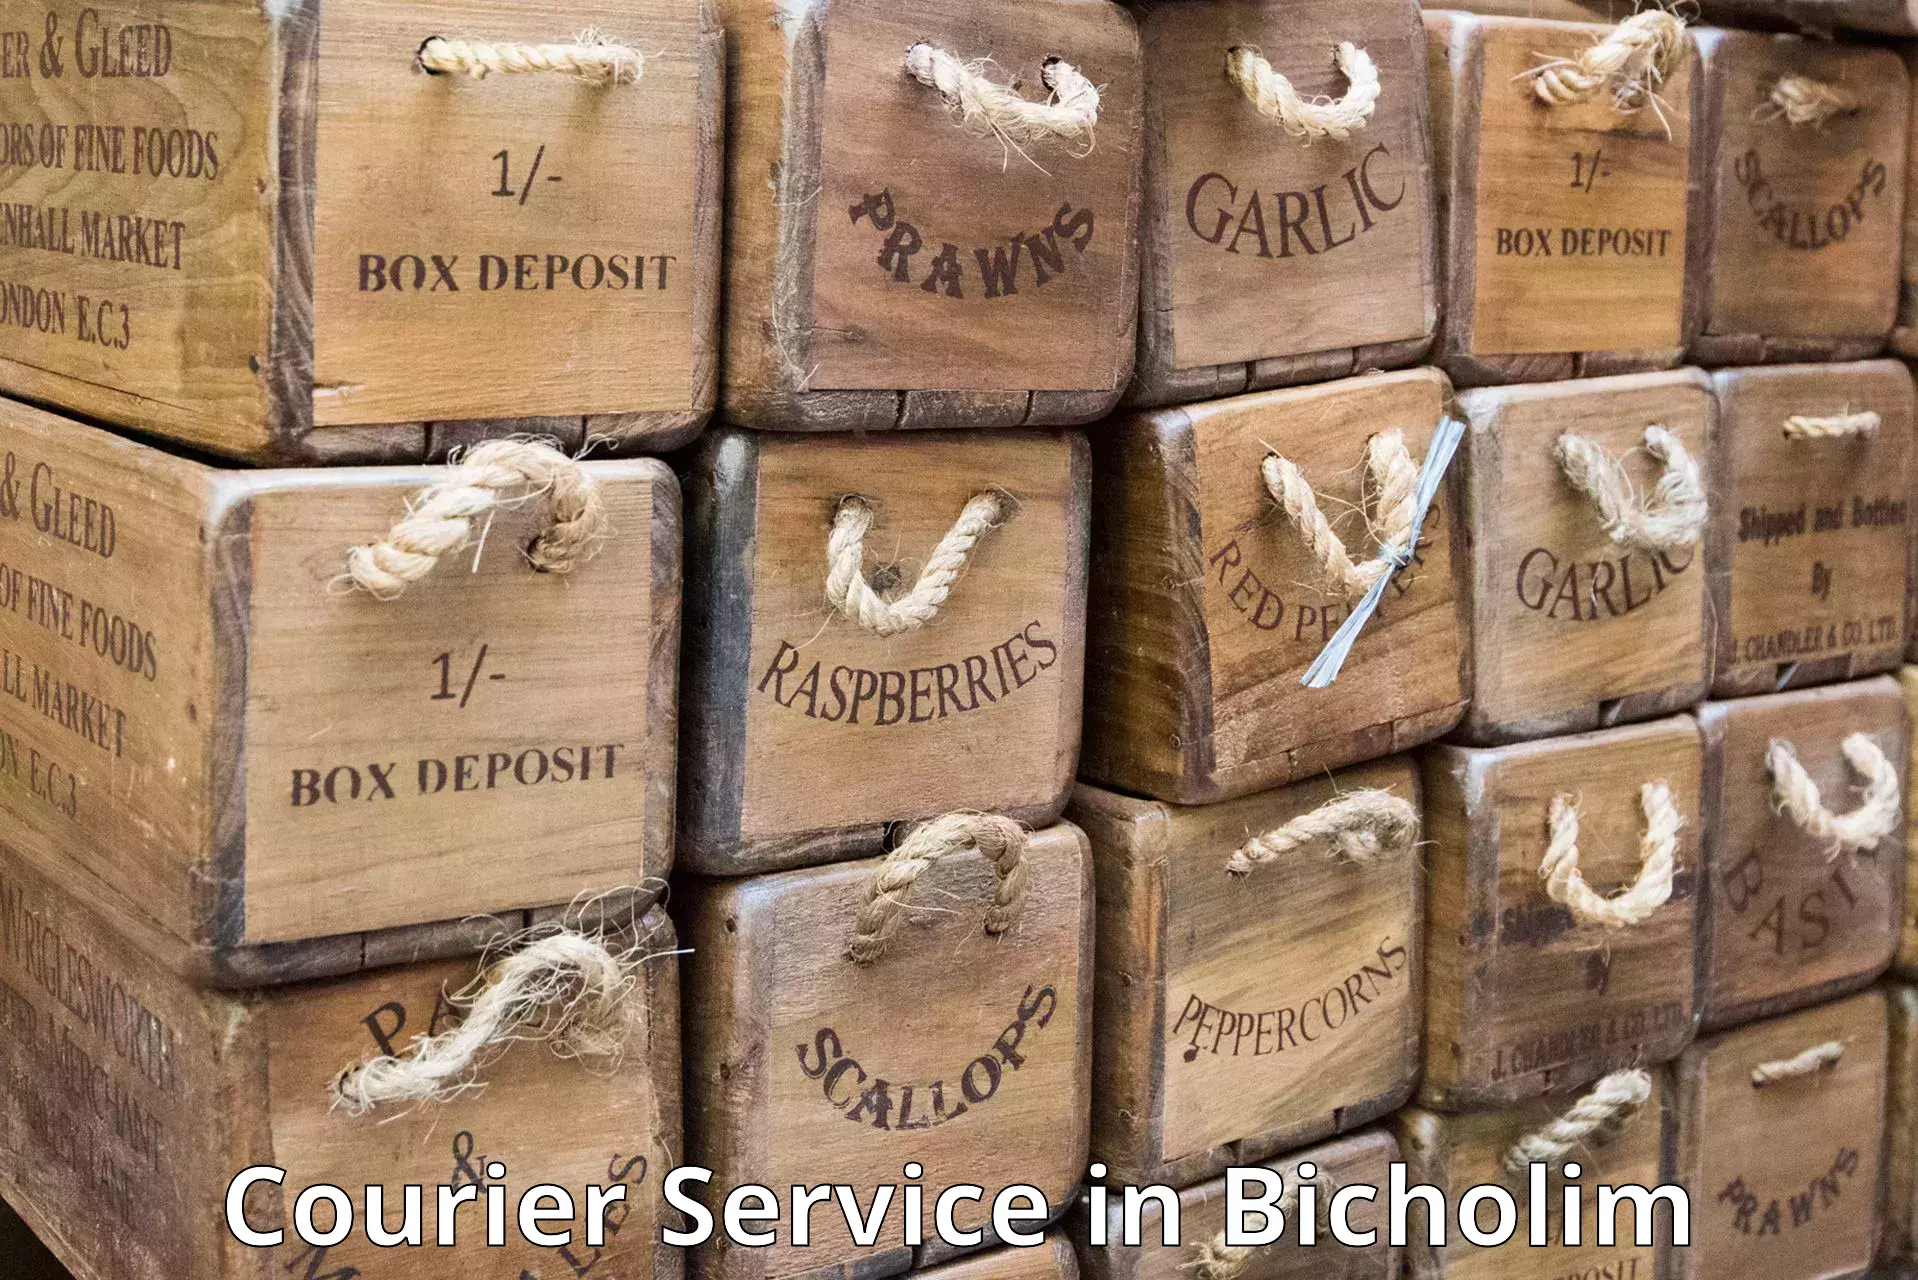 Business logistics support in Bicholim